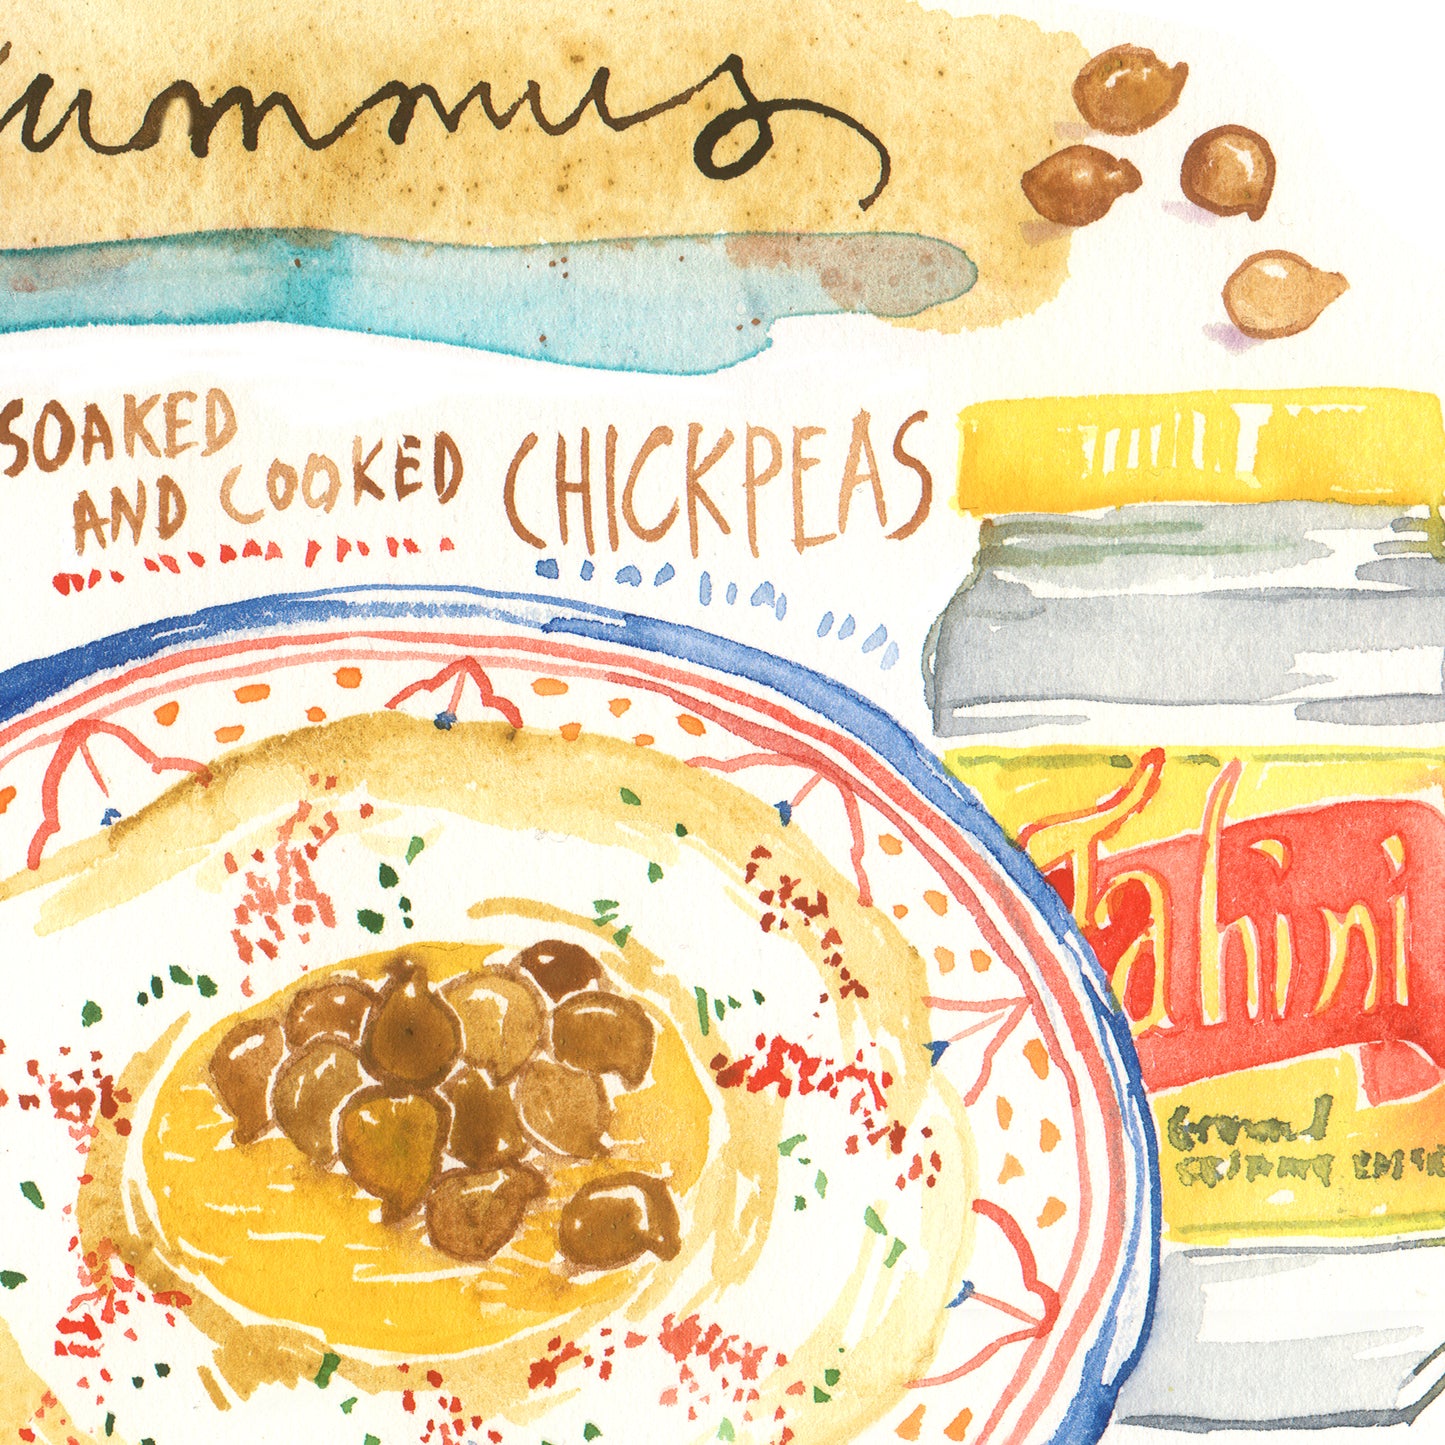 Israeli Hummus recipe